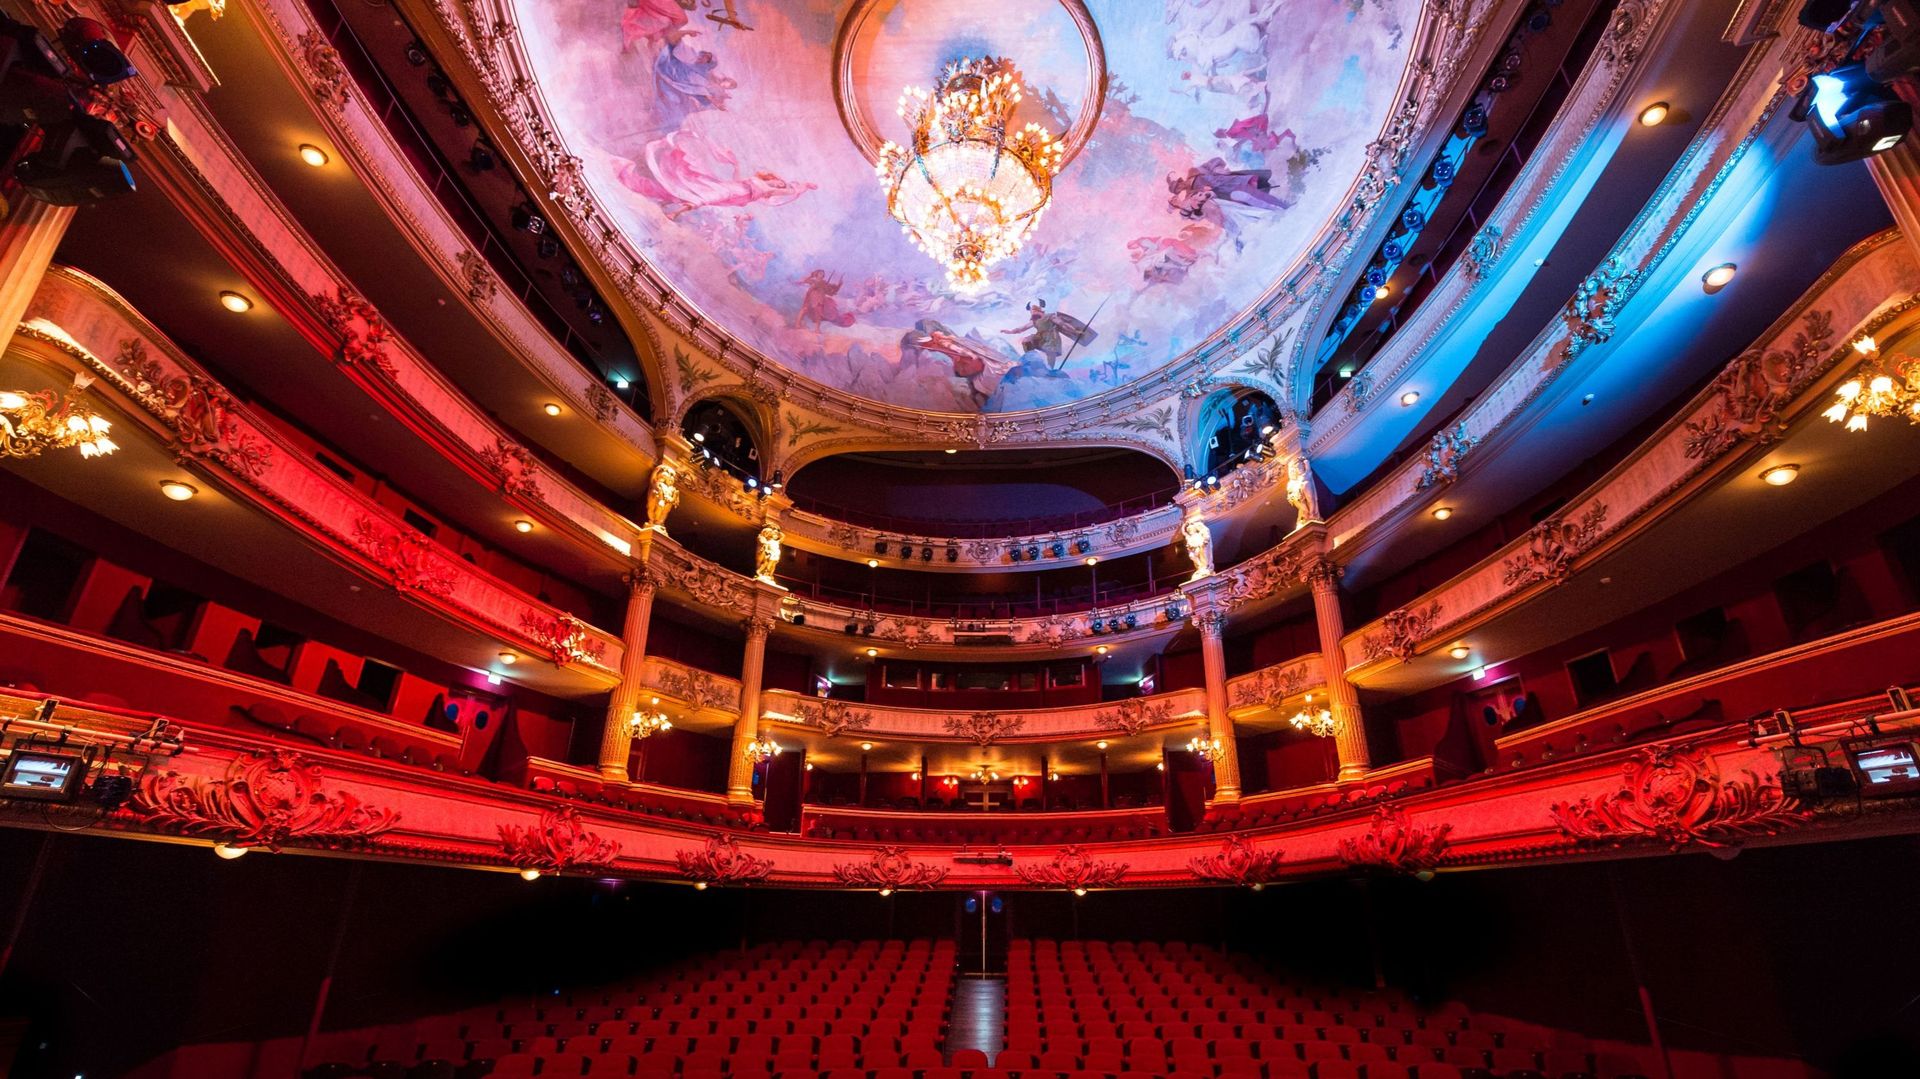 La flamboyance de la salle de spectacle de l'Opéra de Liège!